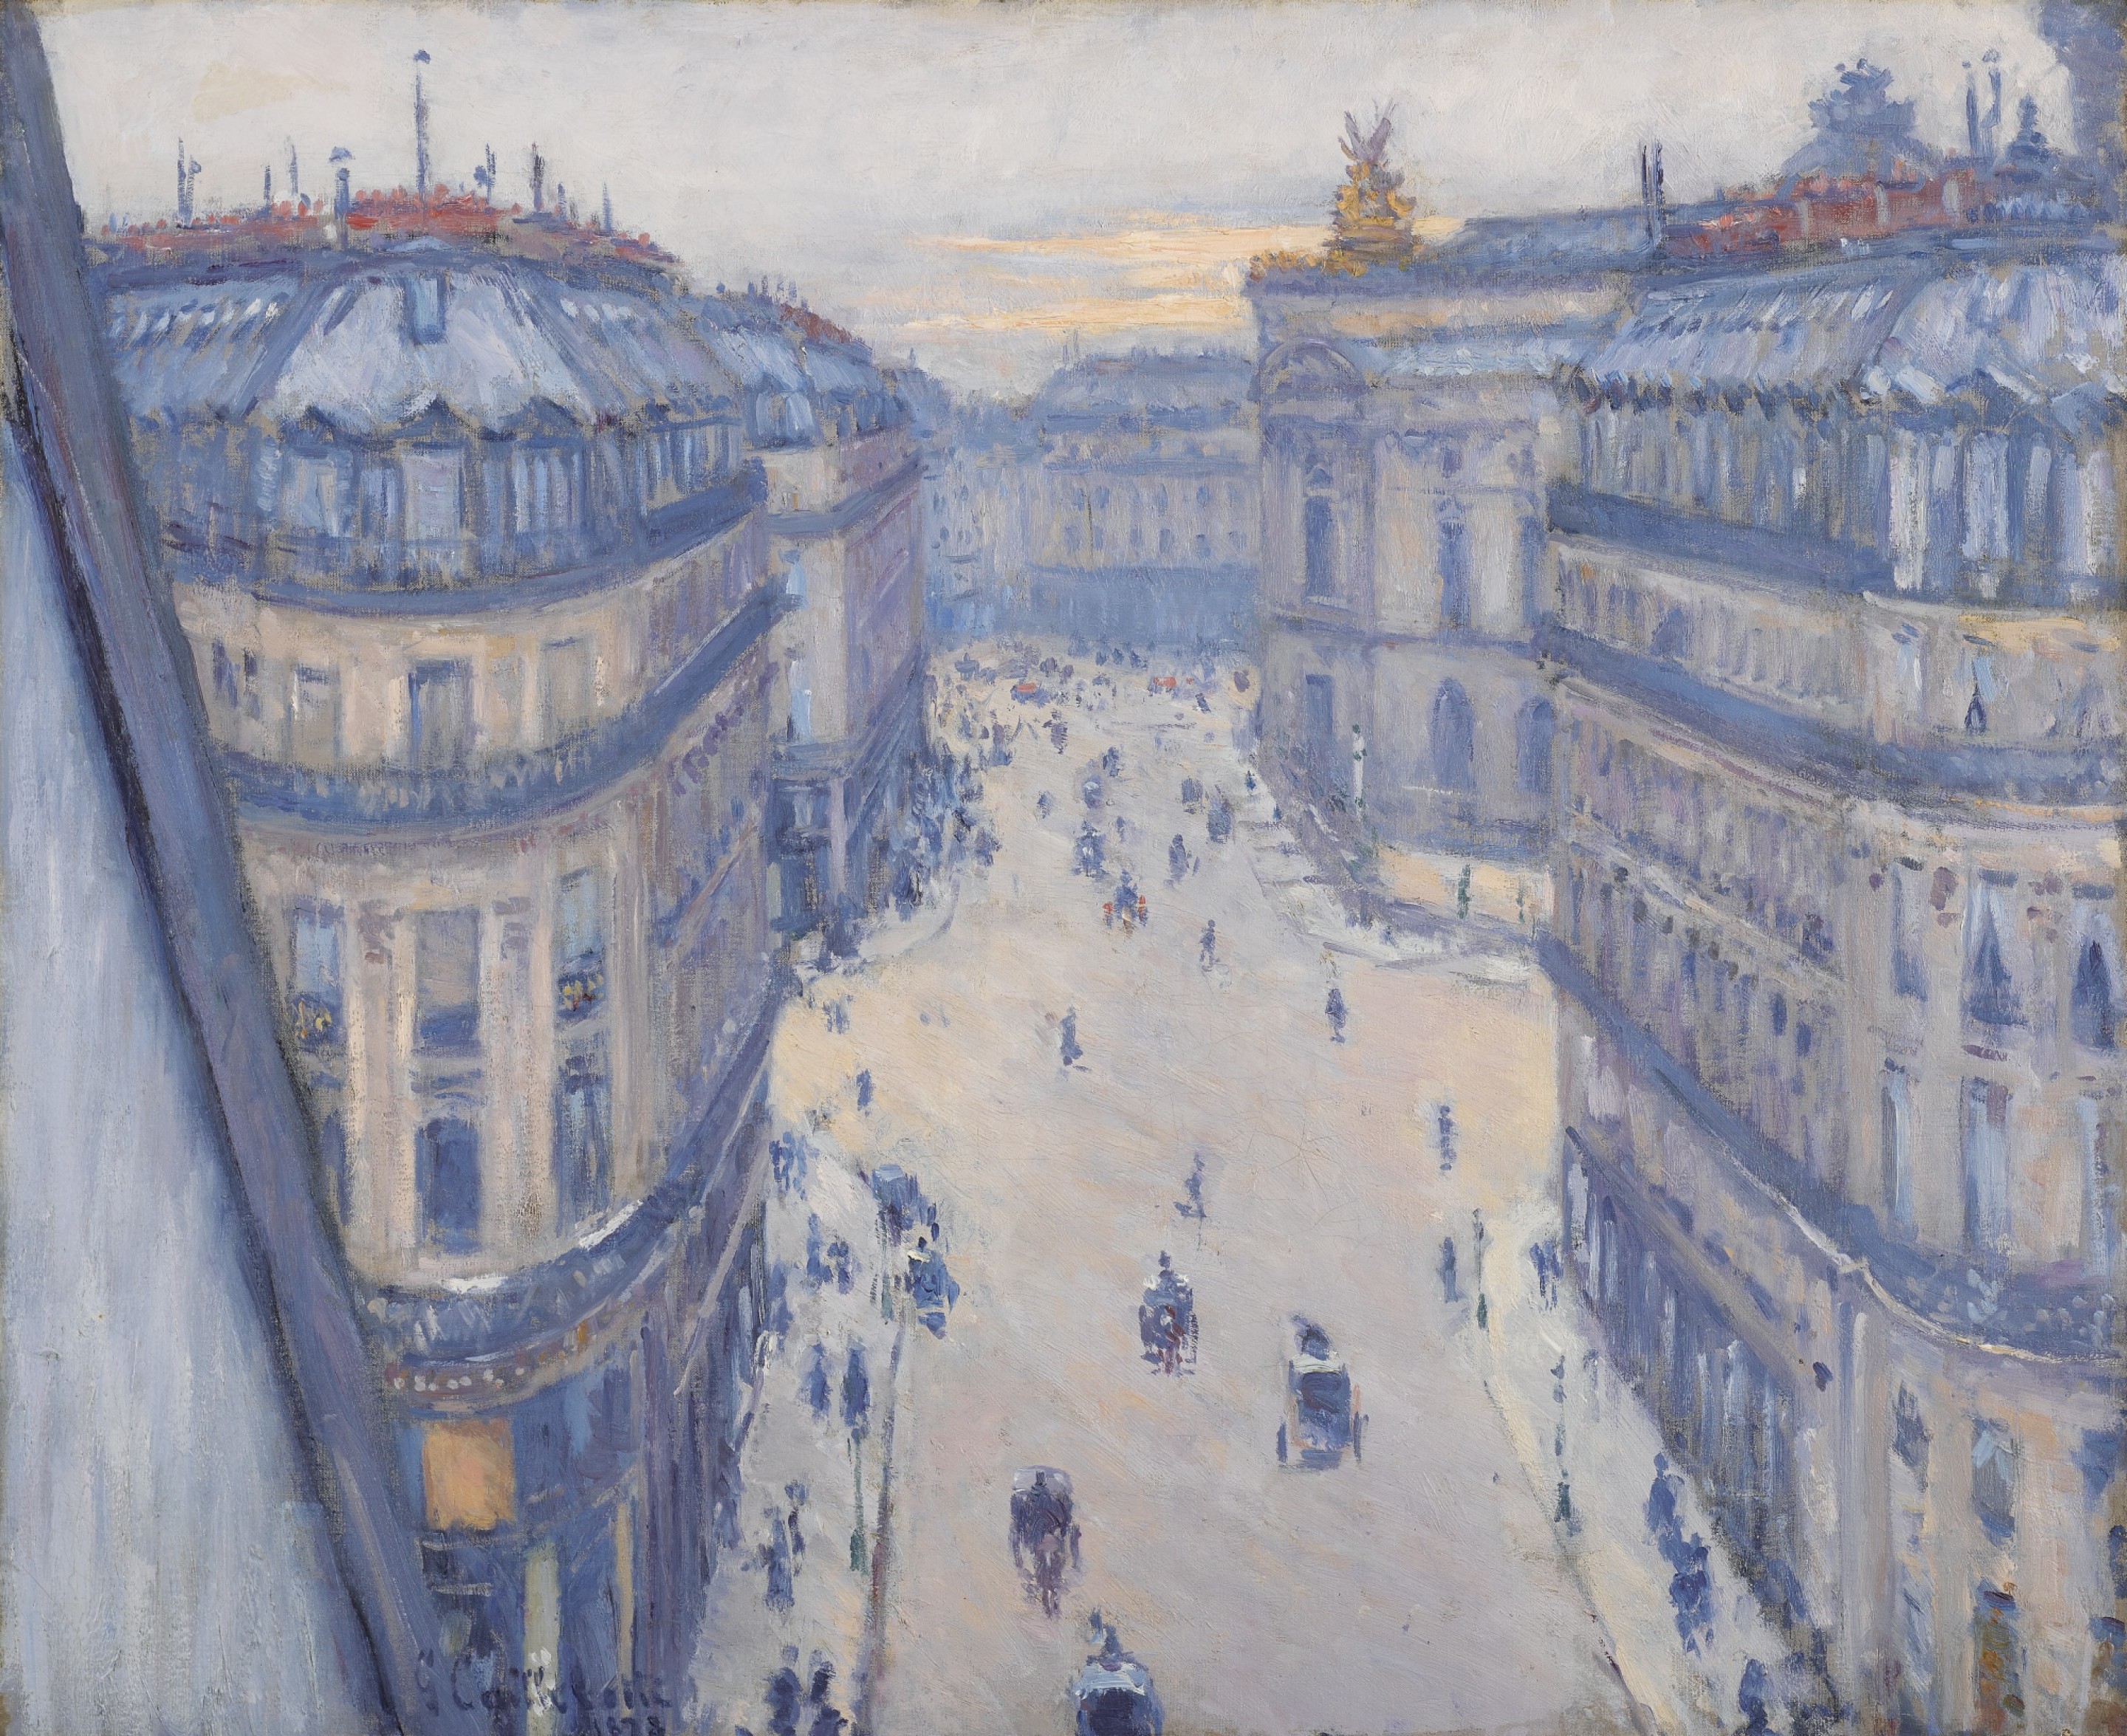 Rue Halévy, Ansicht aus dem sechsten Stock by Gustave Caillebotte - 1878 - 59,5 x 73 cm Private Sammlung